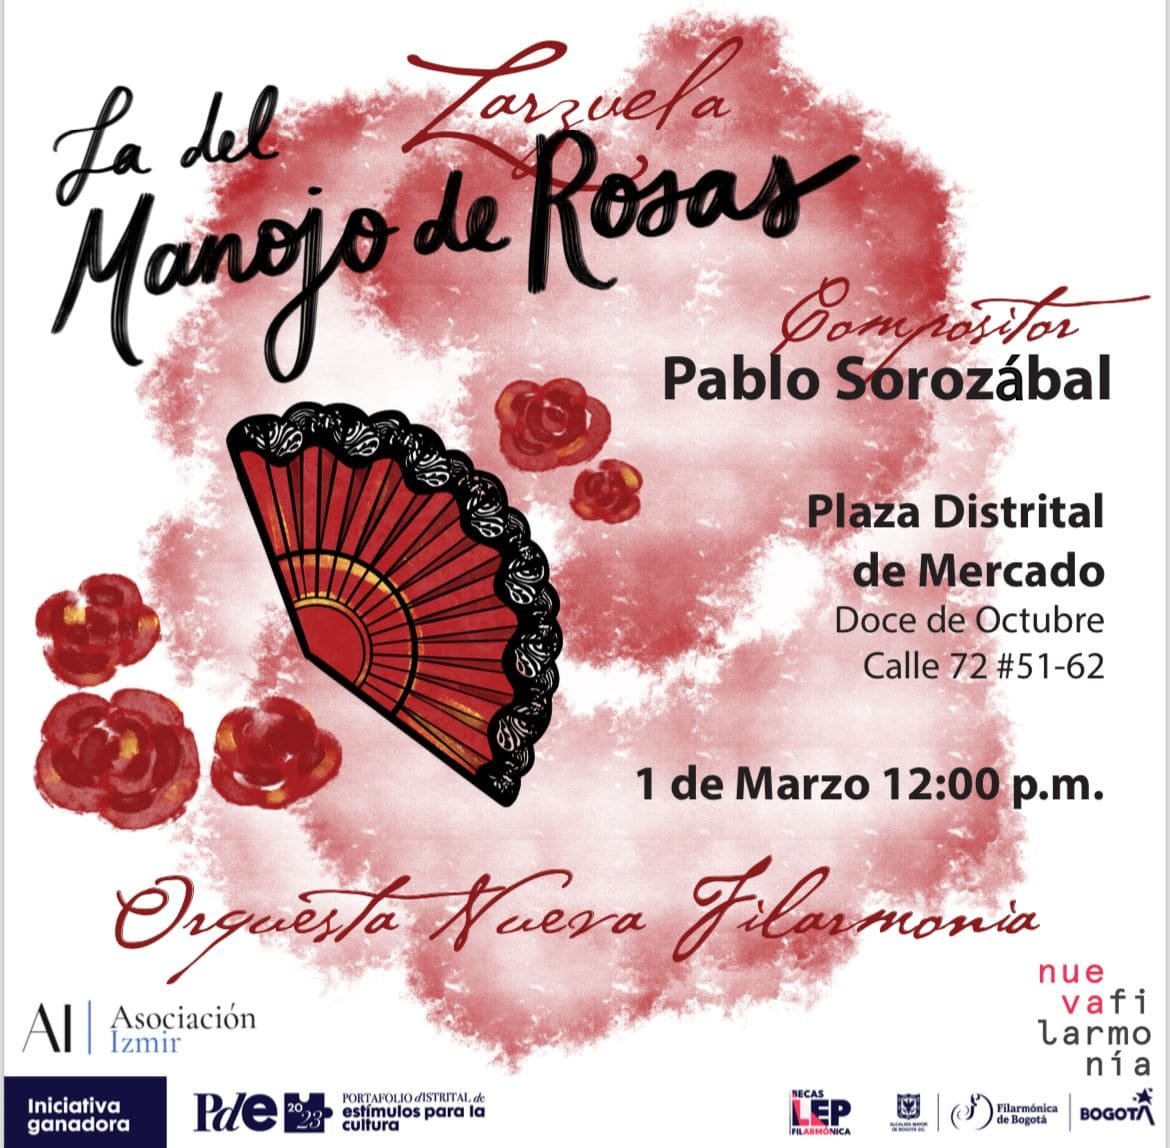 La zarzuela «La del Manojo de Rosas» se podrá ver gratis en Bogotá